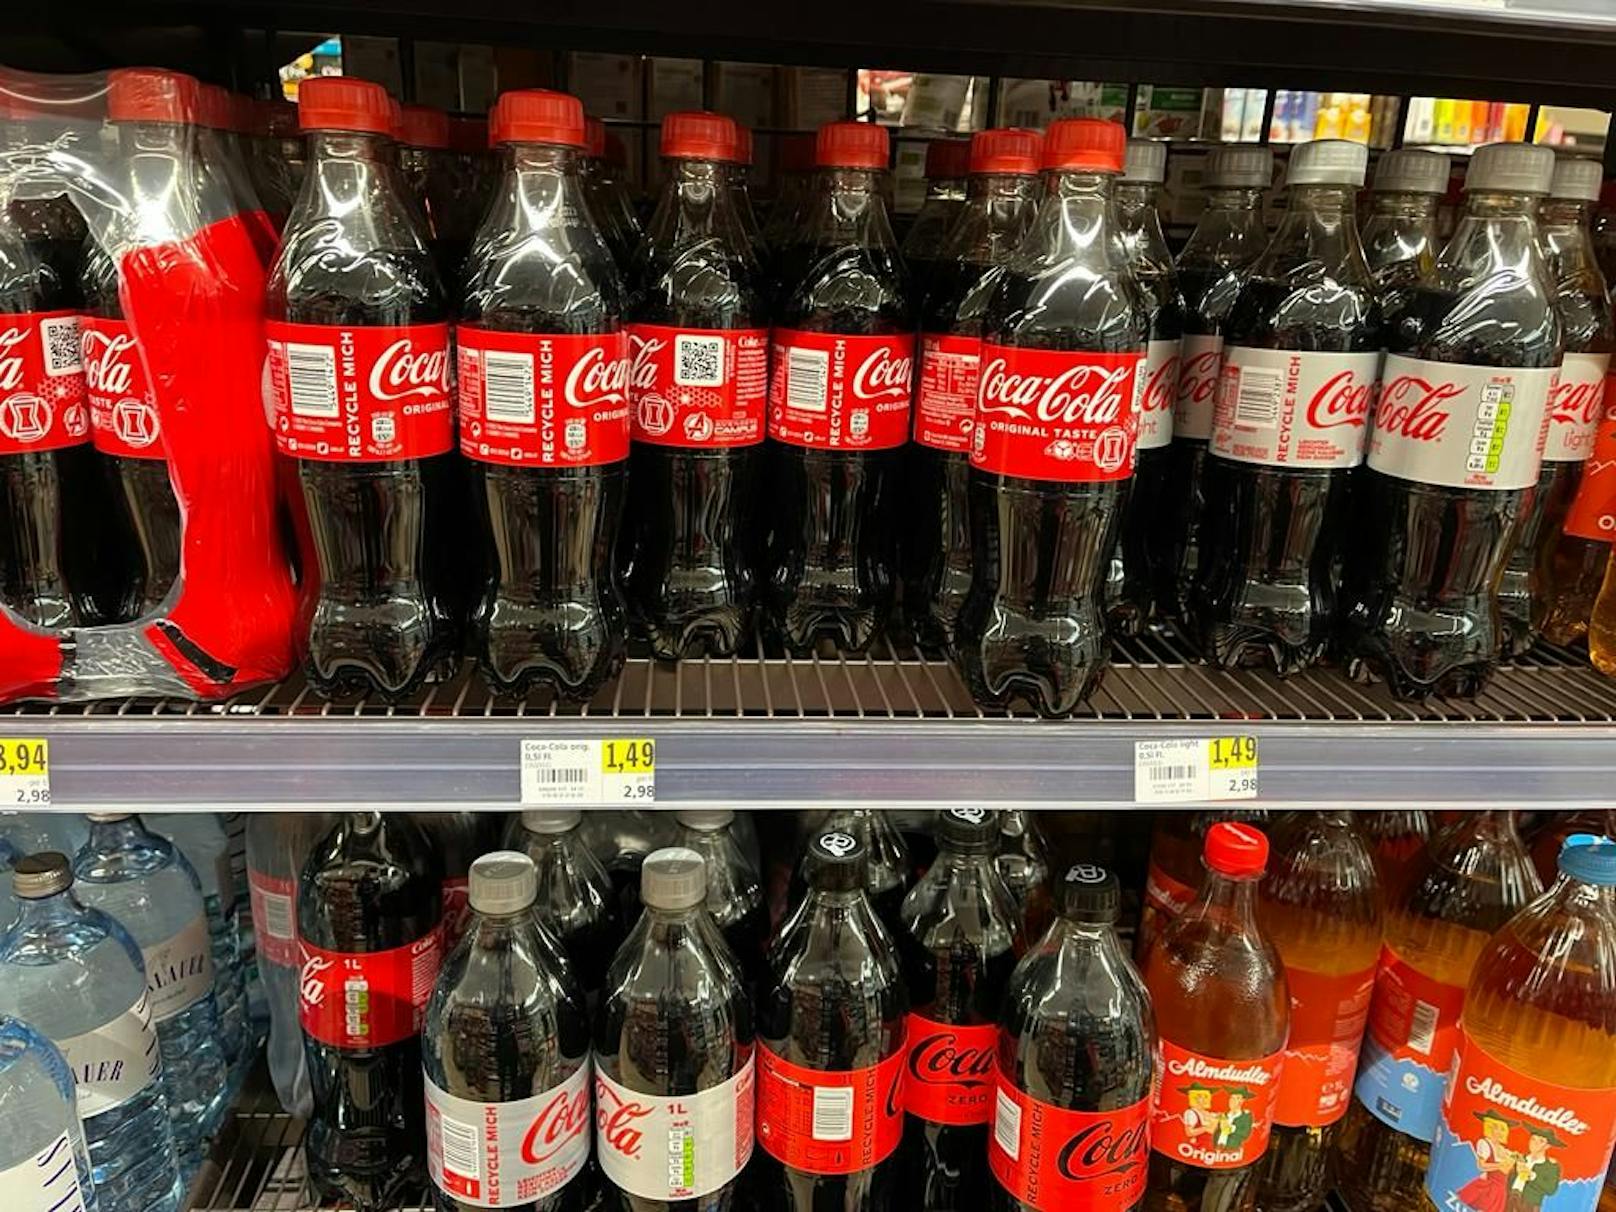 Eine kleine Flasche Coca Cola (halber Liter) kostet bereits 1,49 Euro. Früher kostete diese Flasche 99 Cent. Und um 1,49 Euro bekam man einen Liter.